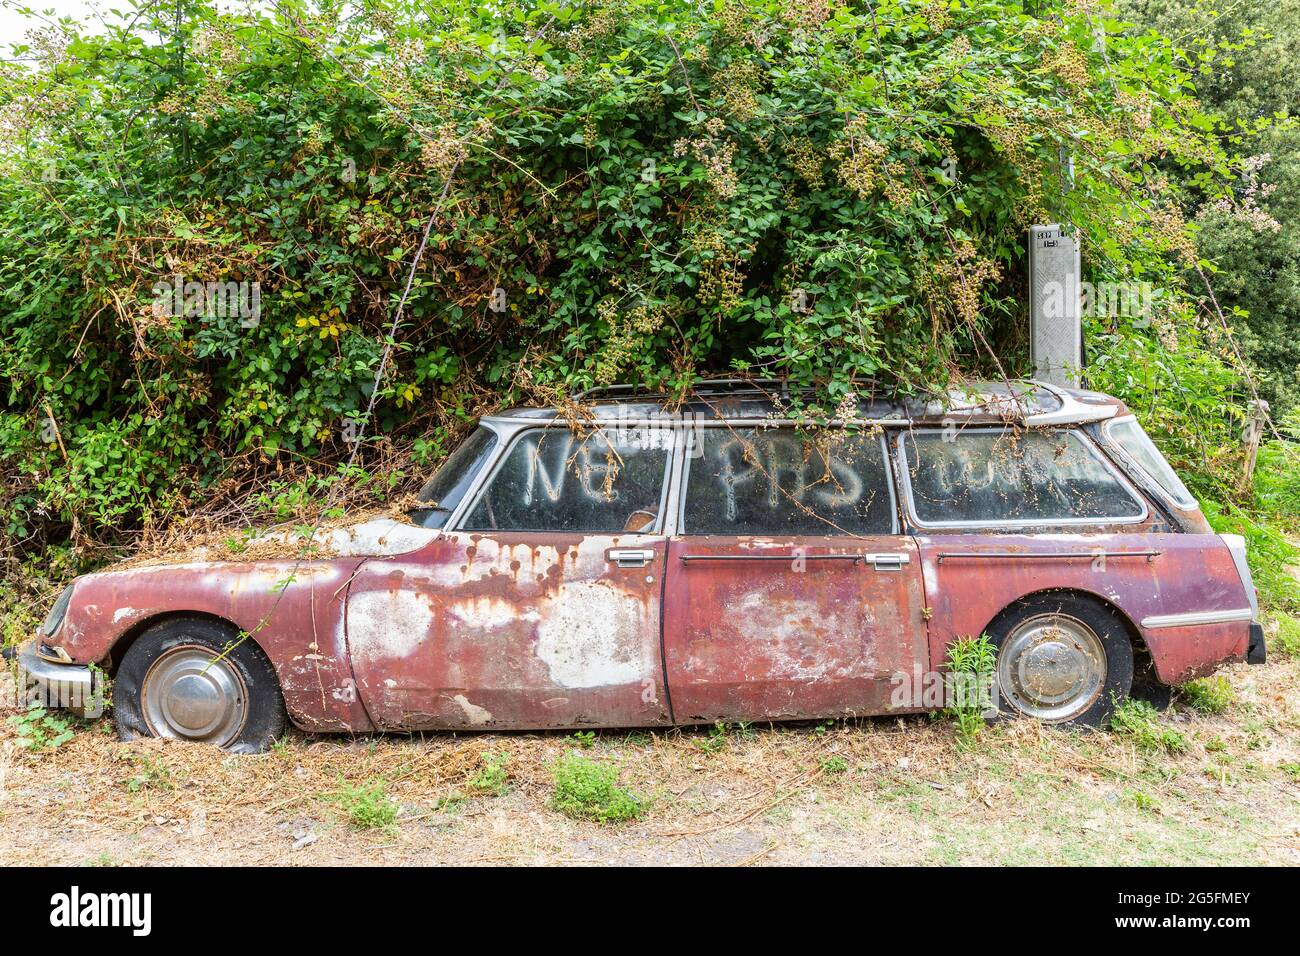 Épave de voiture abandonnée, surcultivée avec de la végétation. Corse, France Banque D'Images